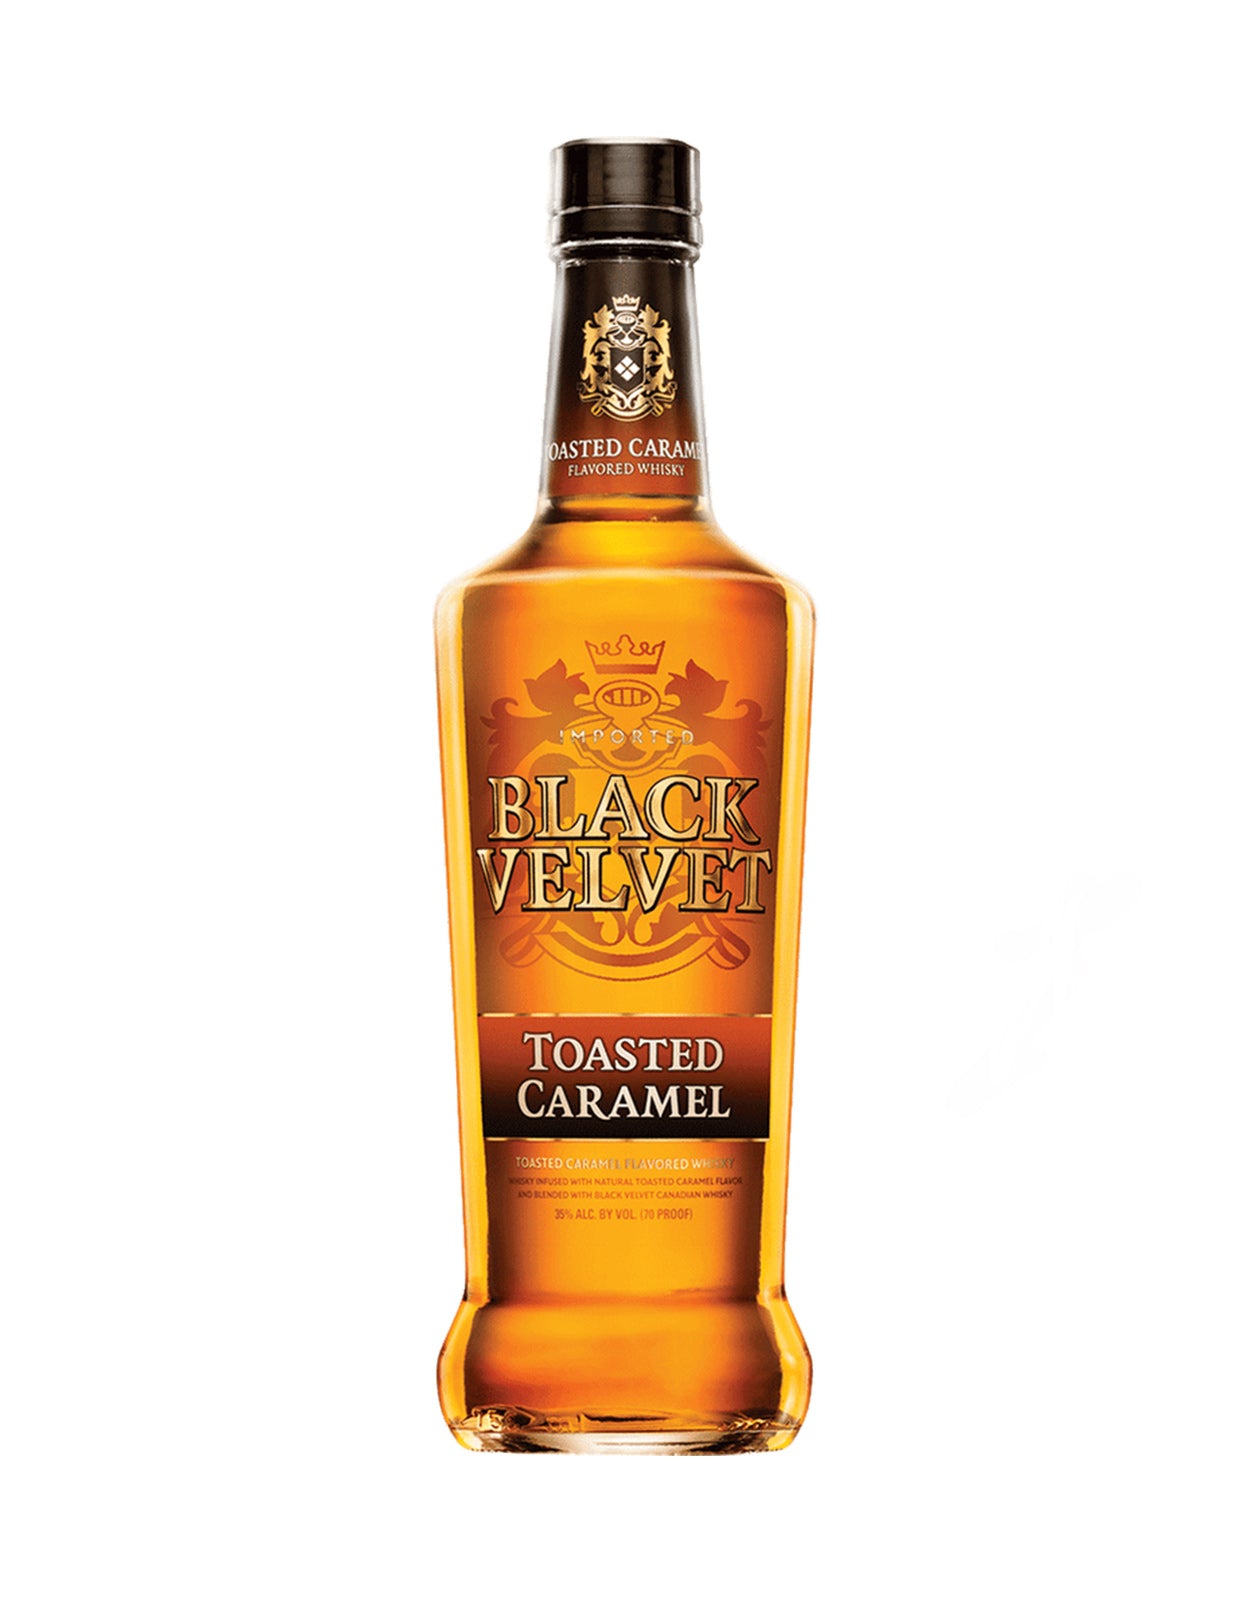 Black Velvet Toasted Caramel Whisky